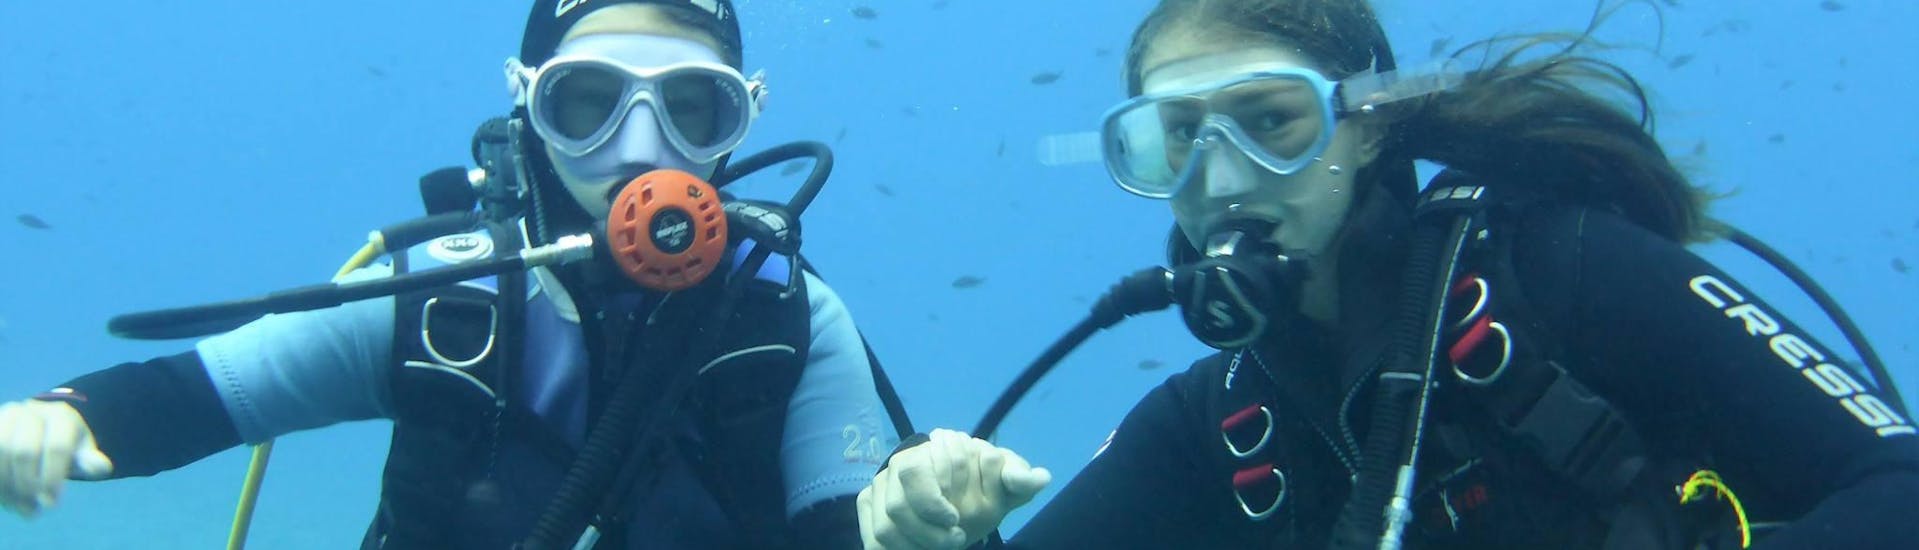 Due persone che si immergono durante il corso PADI Scuba Diver a Port d'Andratx per principianti con Balear Divers.